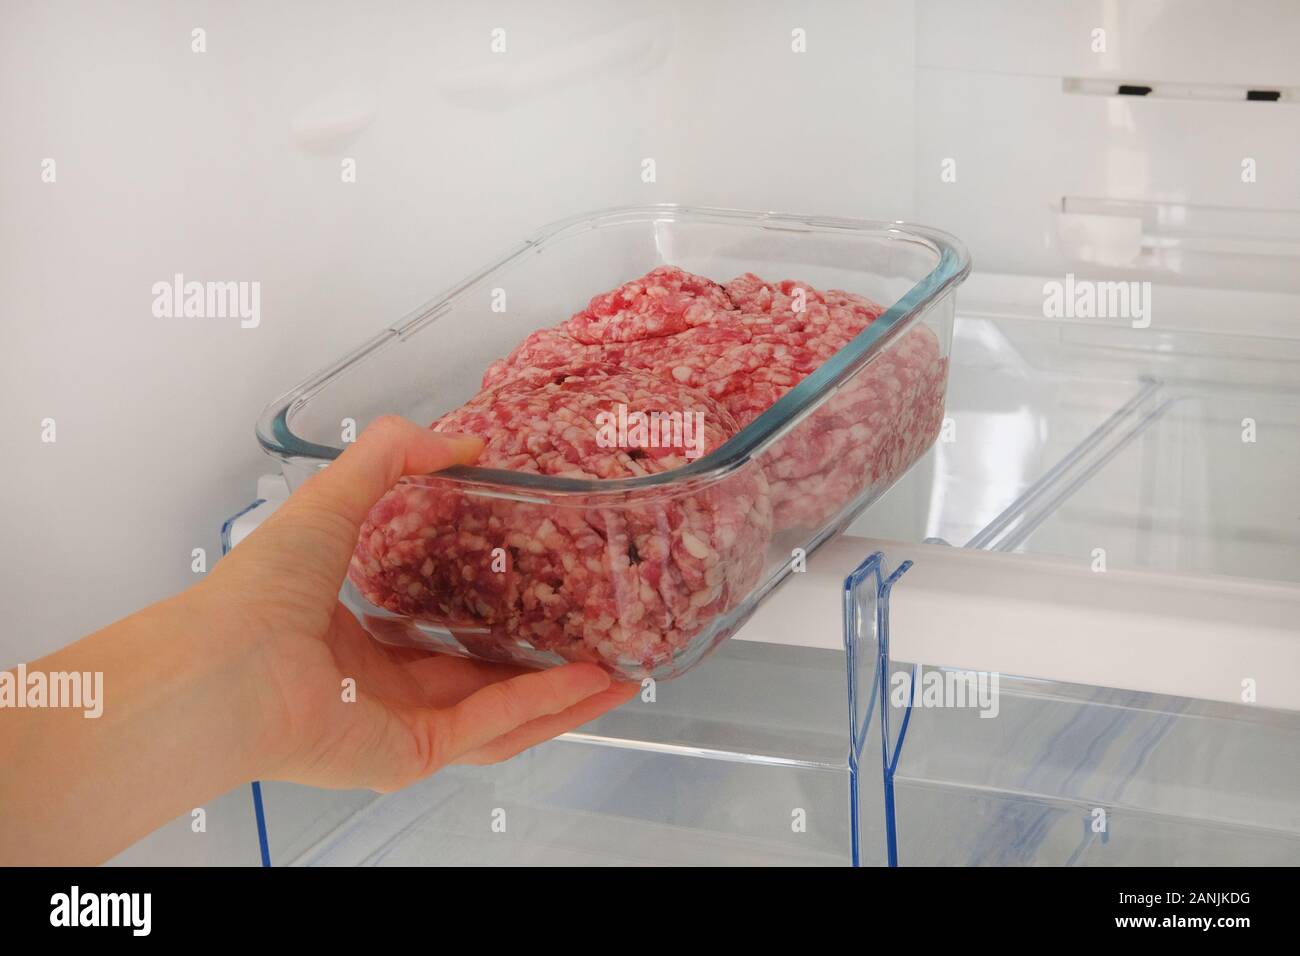 Hackfleisch/Faschiertes rohes Fleisch im Glas Container ist im Regal in  offenen Kühlschrank. Weibliche Hand zieht sich aus dem Kühlschrank eine  Zutat für das Kochen von Fleisch Stockfotografie - Alamy